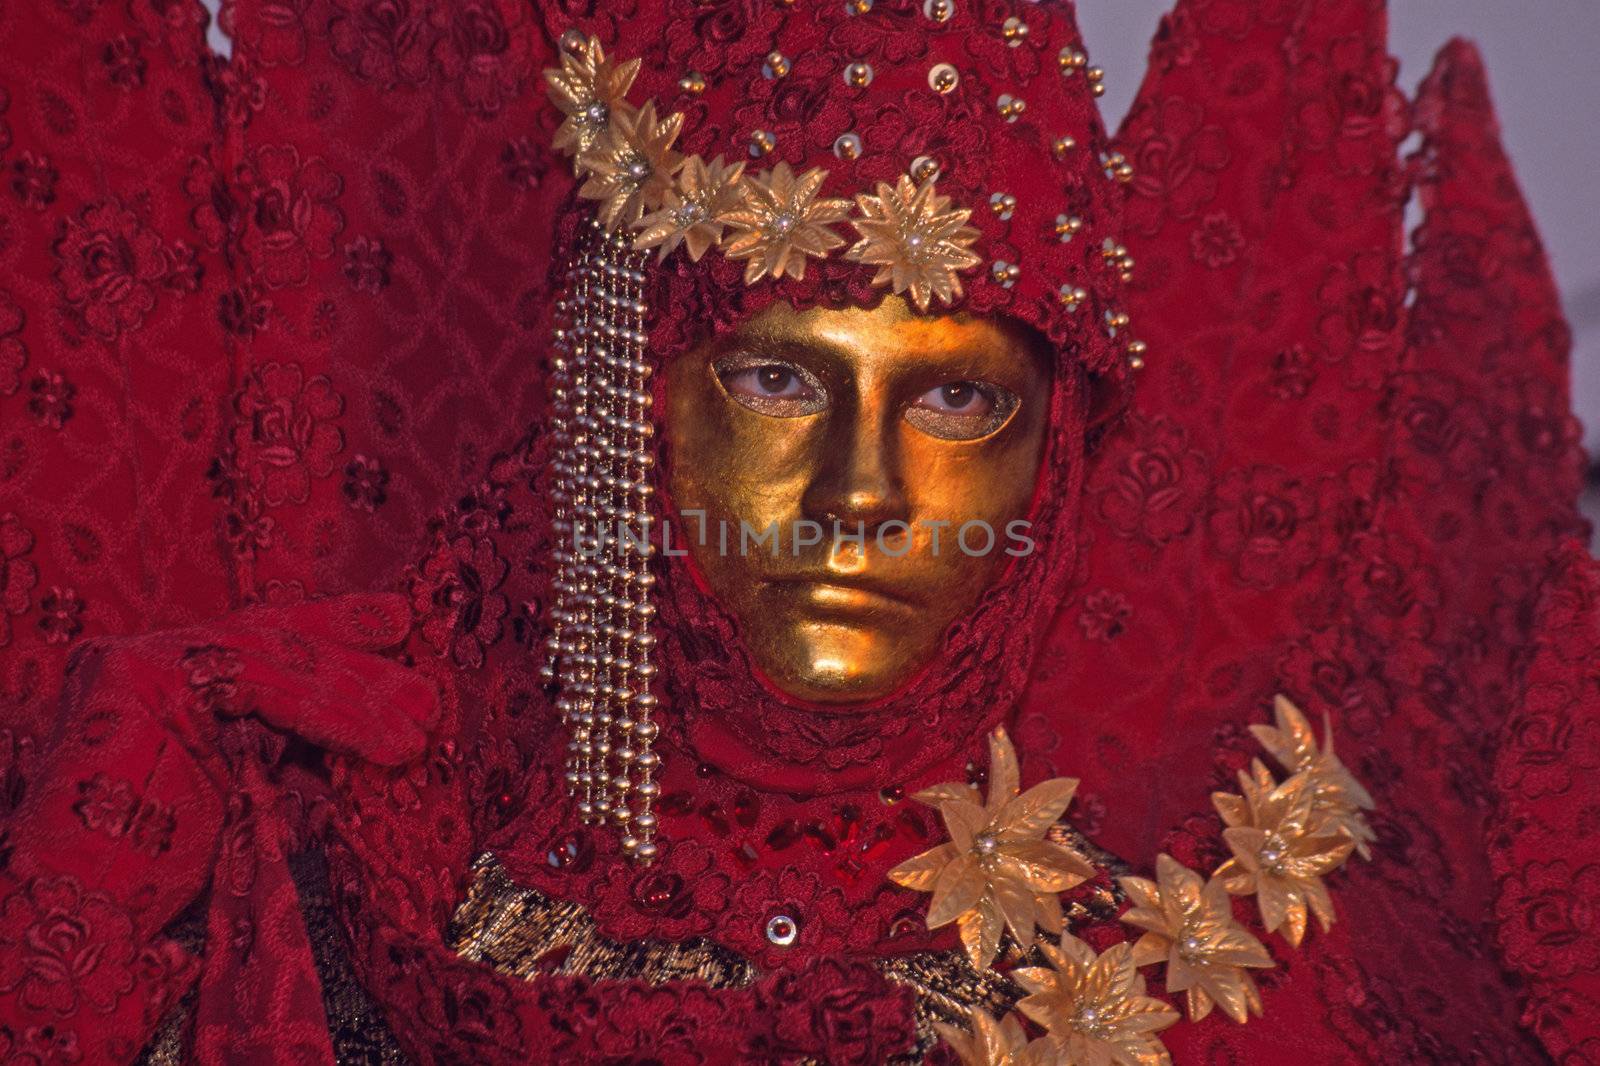 Carnival in Venice, Mask 111b
Karneval in Venedig, Maske 111b